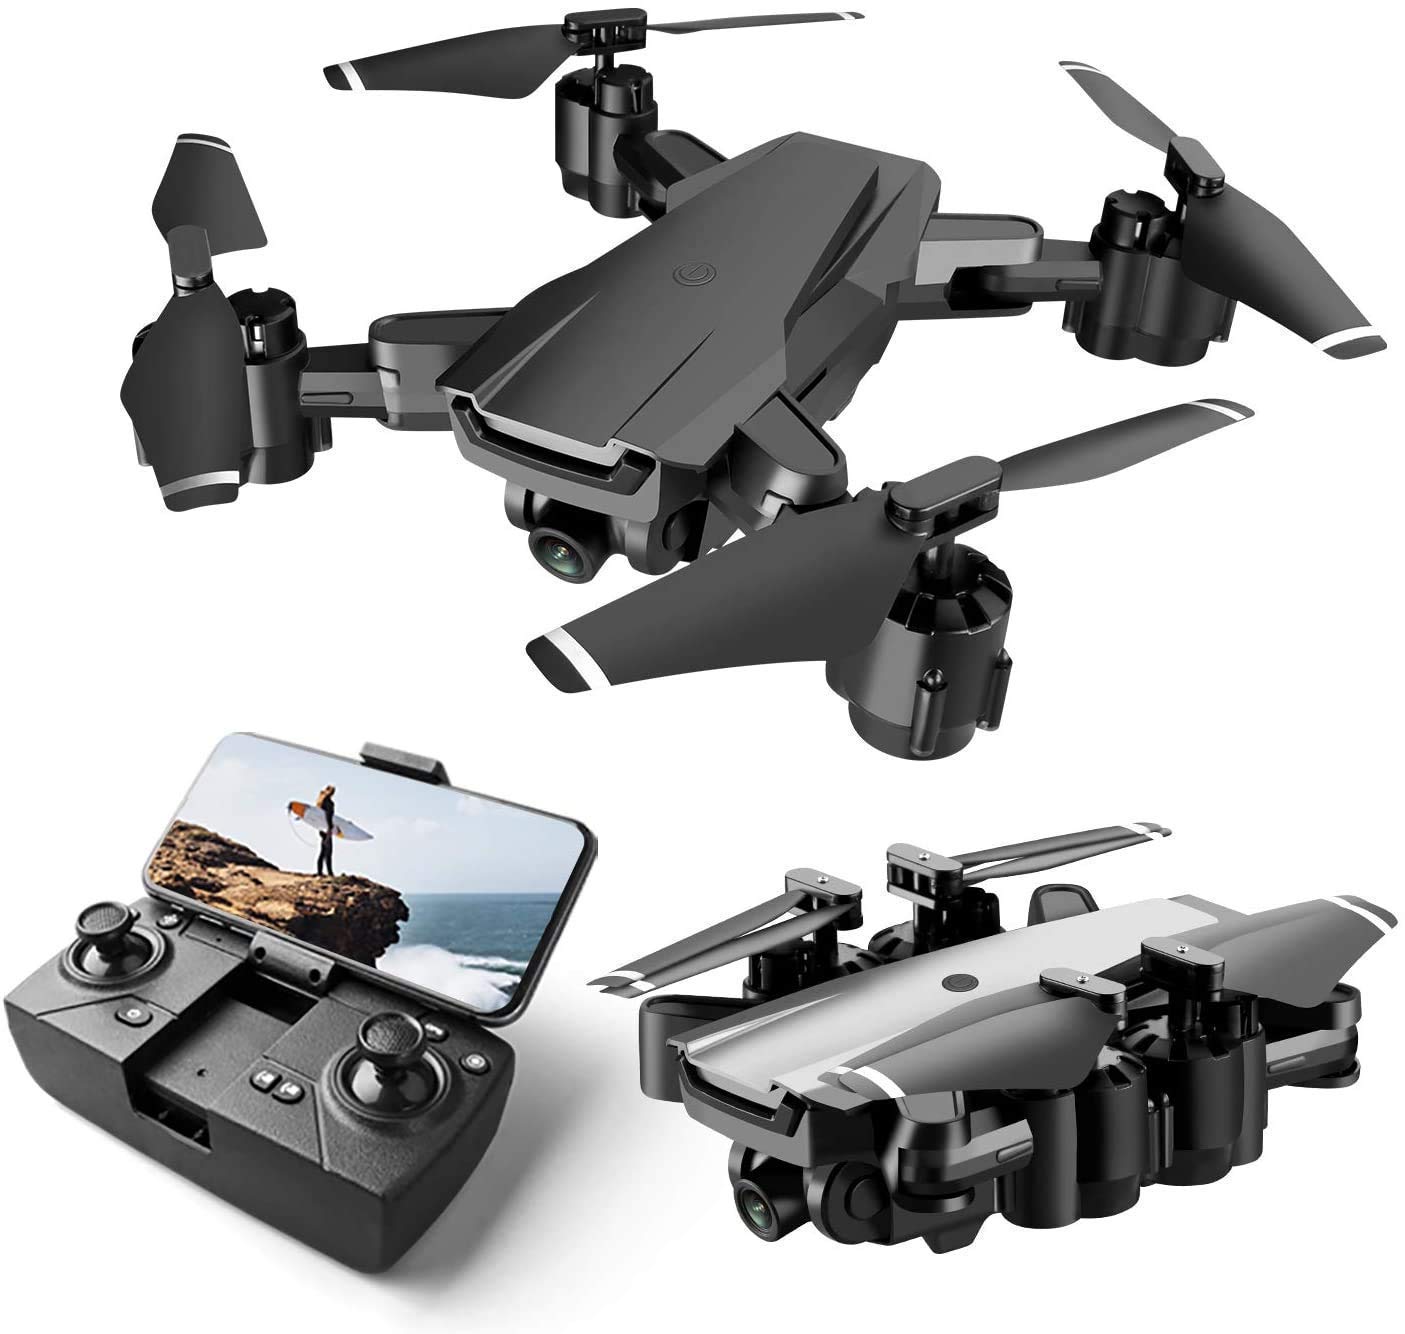 NDI 480p drone